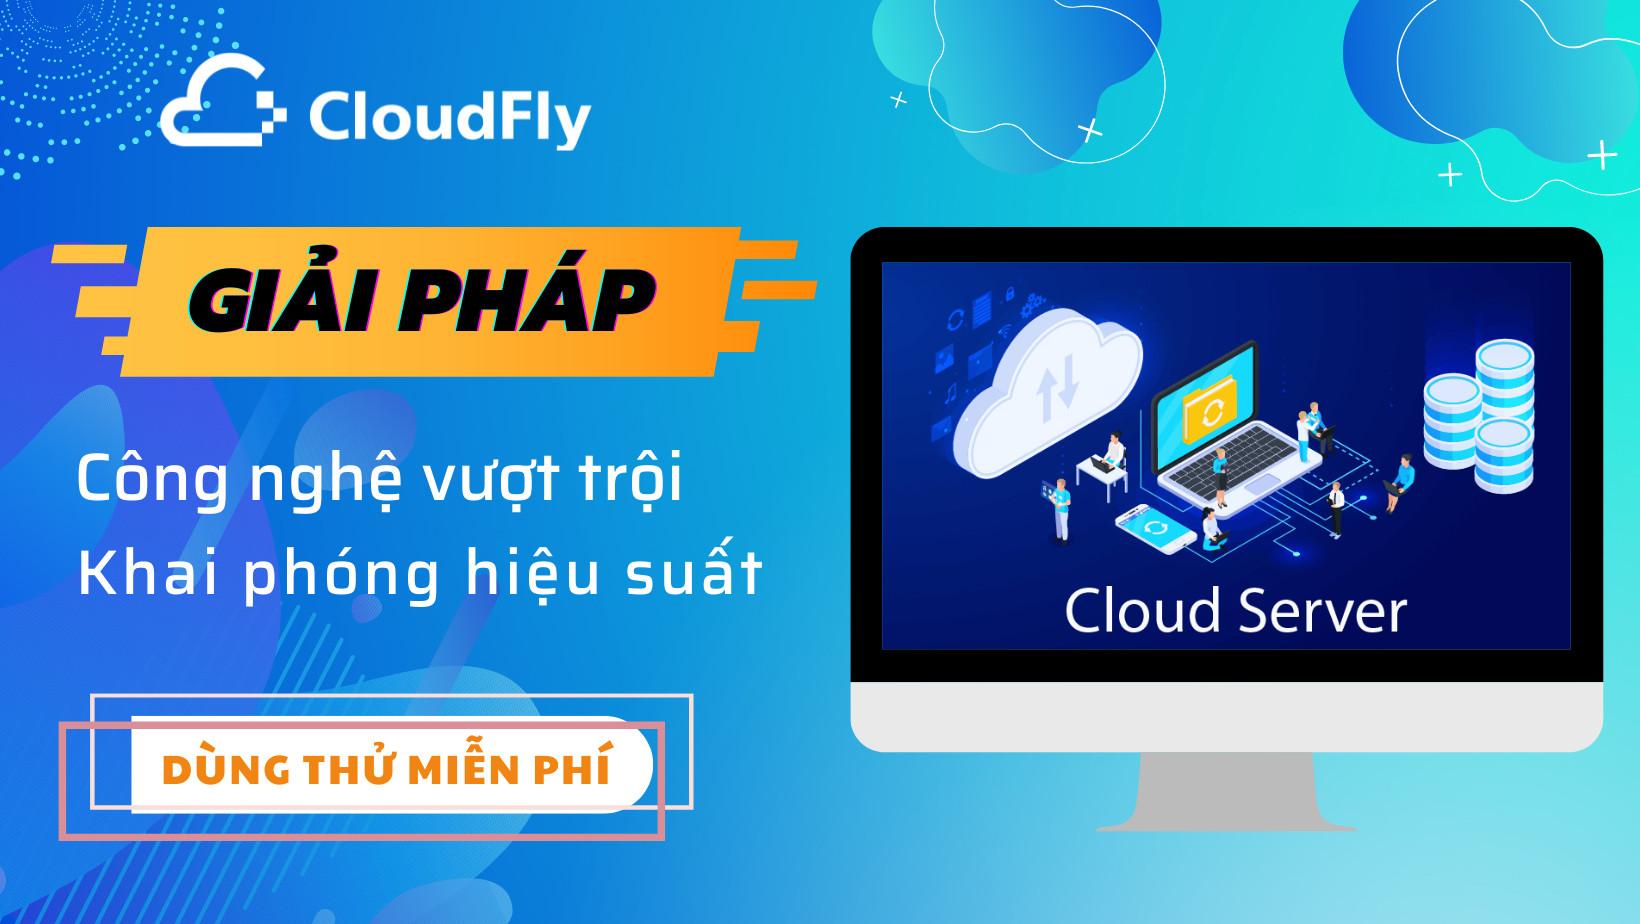 cloudfly cung cấp cloud hosting giá rẻ